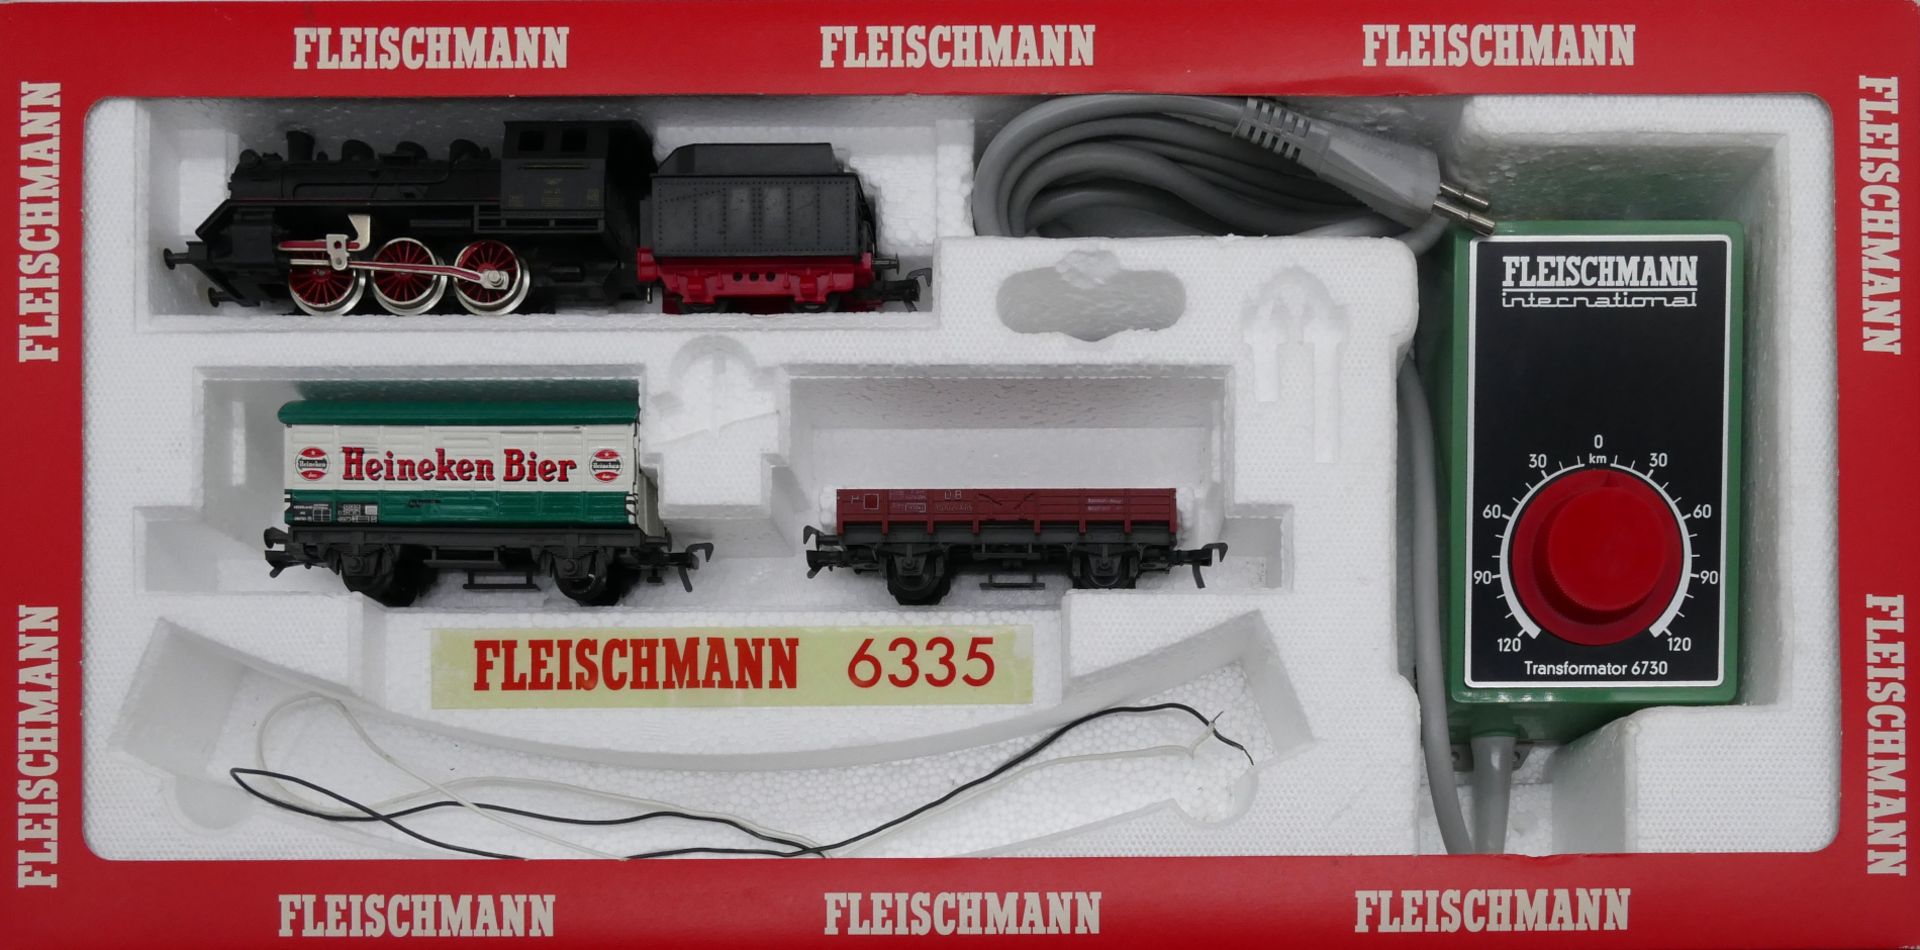 1 Konv. Modelleisenbahn v.a. FLEISCHMANN: 3 Dampf- und Elektrolokomotiven, 14 Personen- und Güterwag